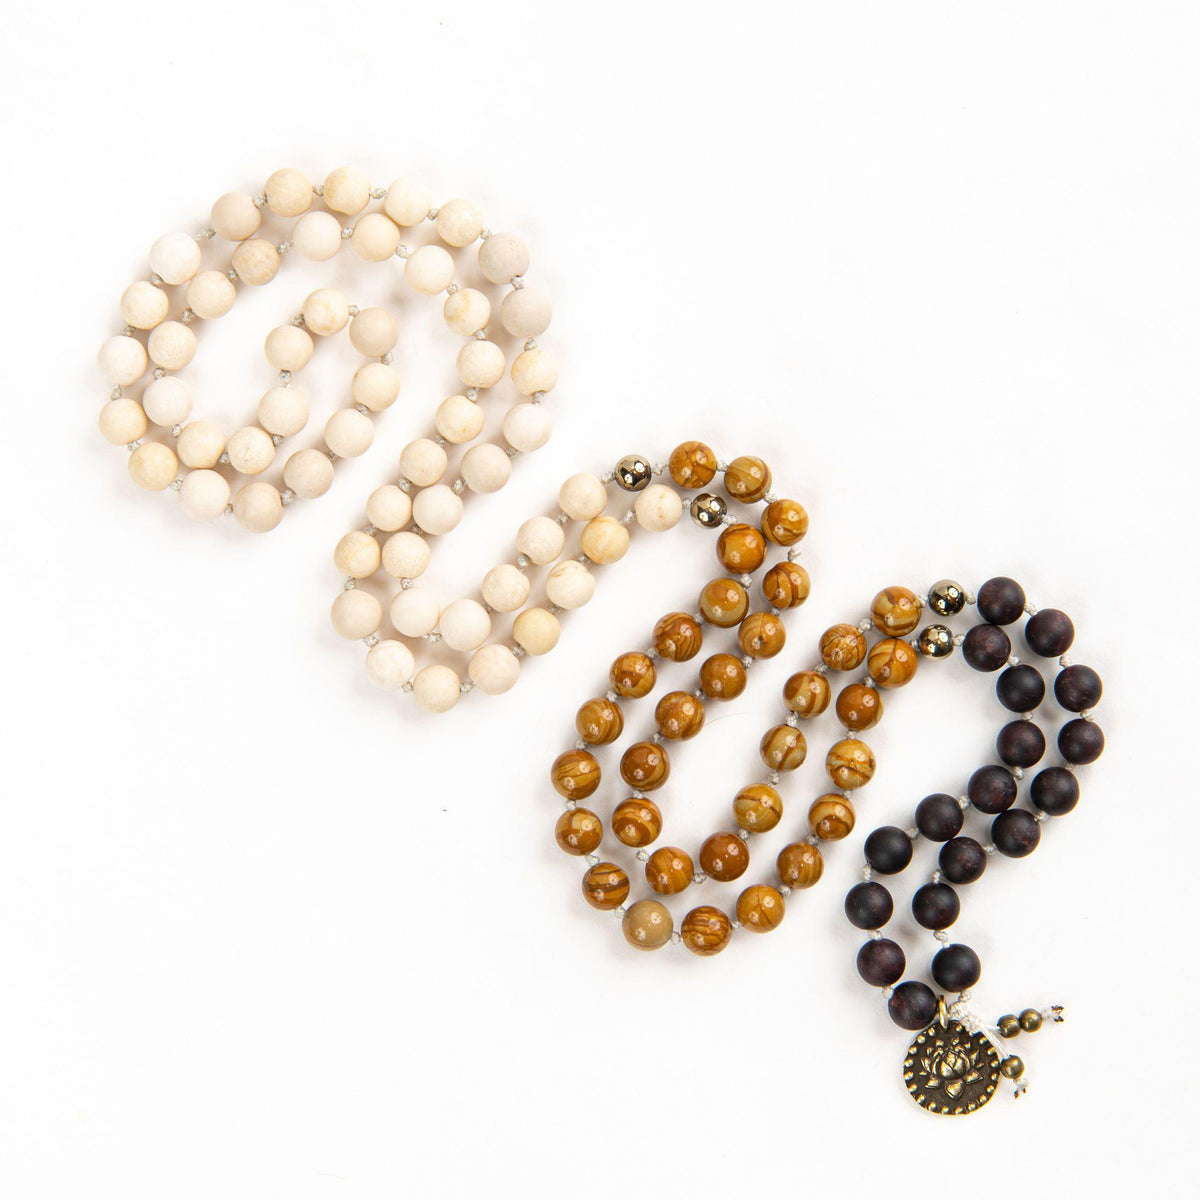 Earth Elements Ombre Mala Beads with Charm Finish Merakalpa Malas